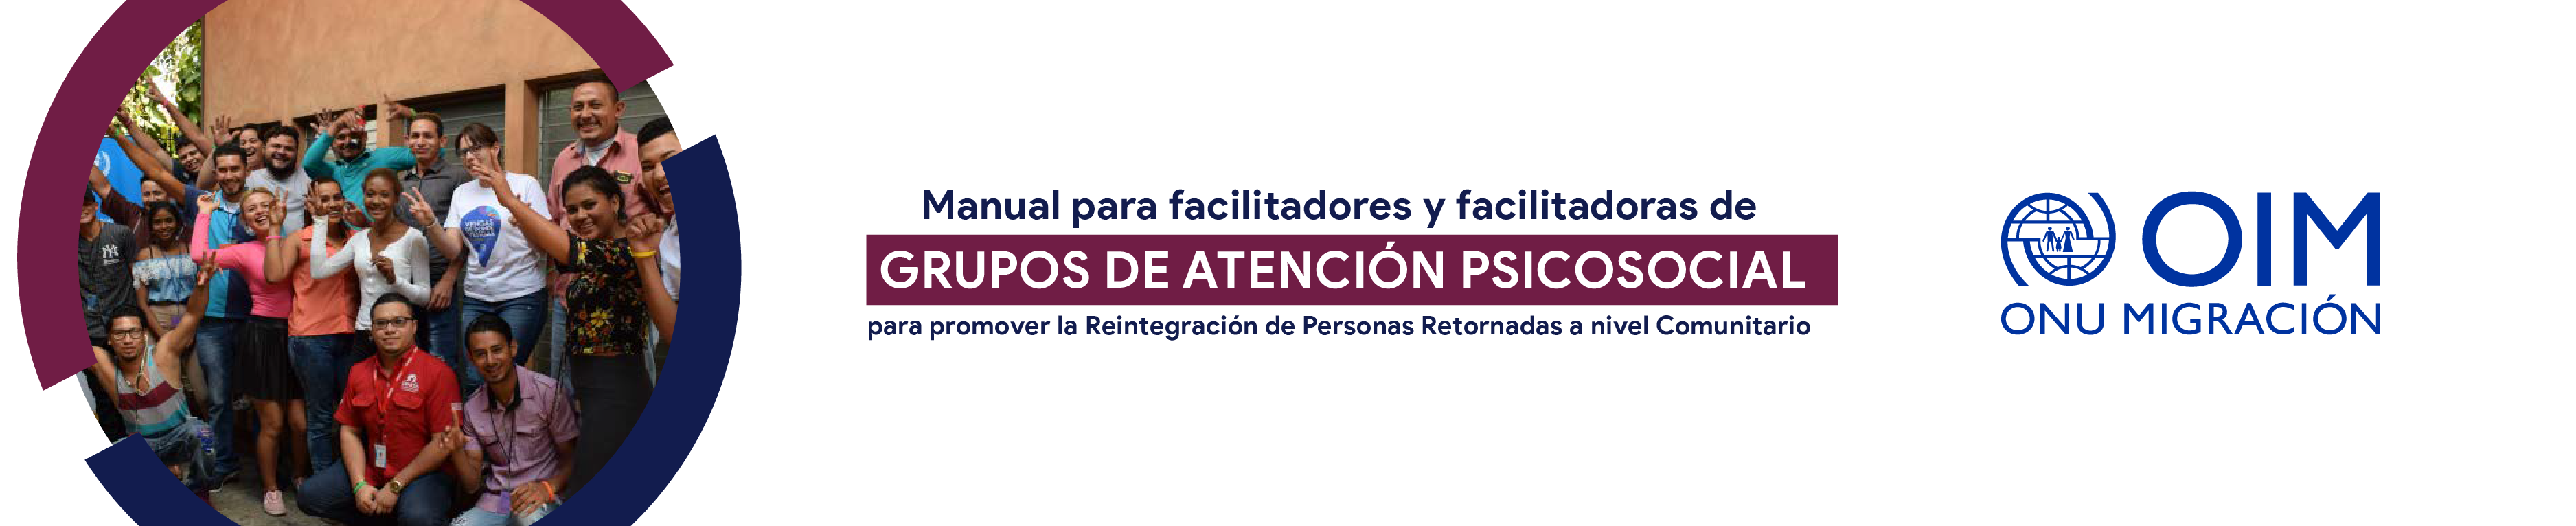 Manual para facilitadores y facilitadoras de grupos de atención psicosocial para promover la reintegración de personas retornadas a nivel comunitario.  